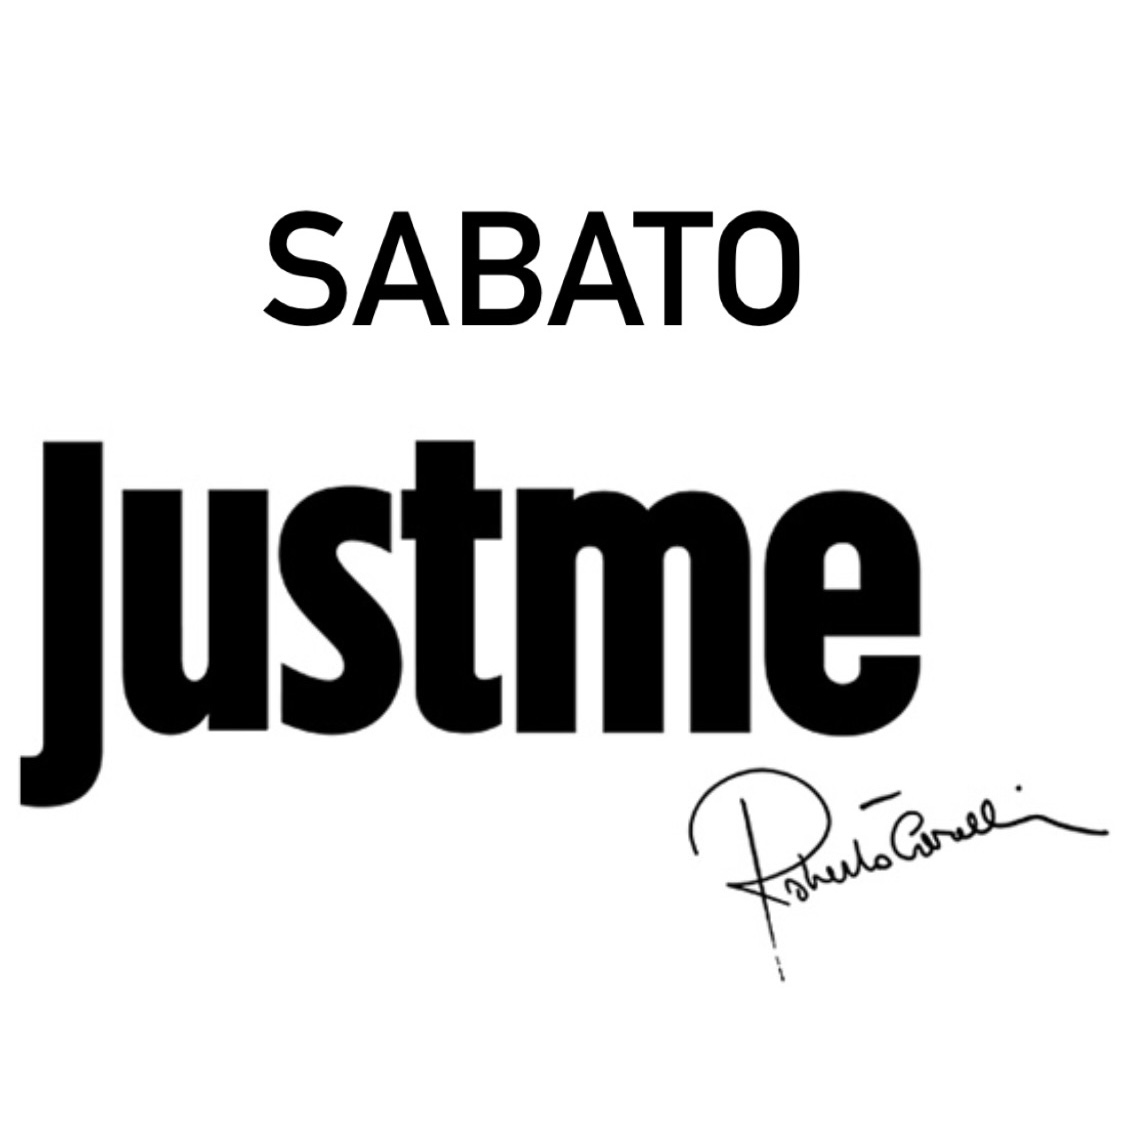 Sabato Just Cavalli Milano - Info, liste e prenotazioni: +393282345620 (anche whatsapp)